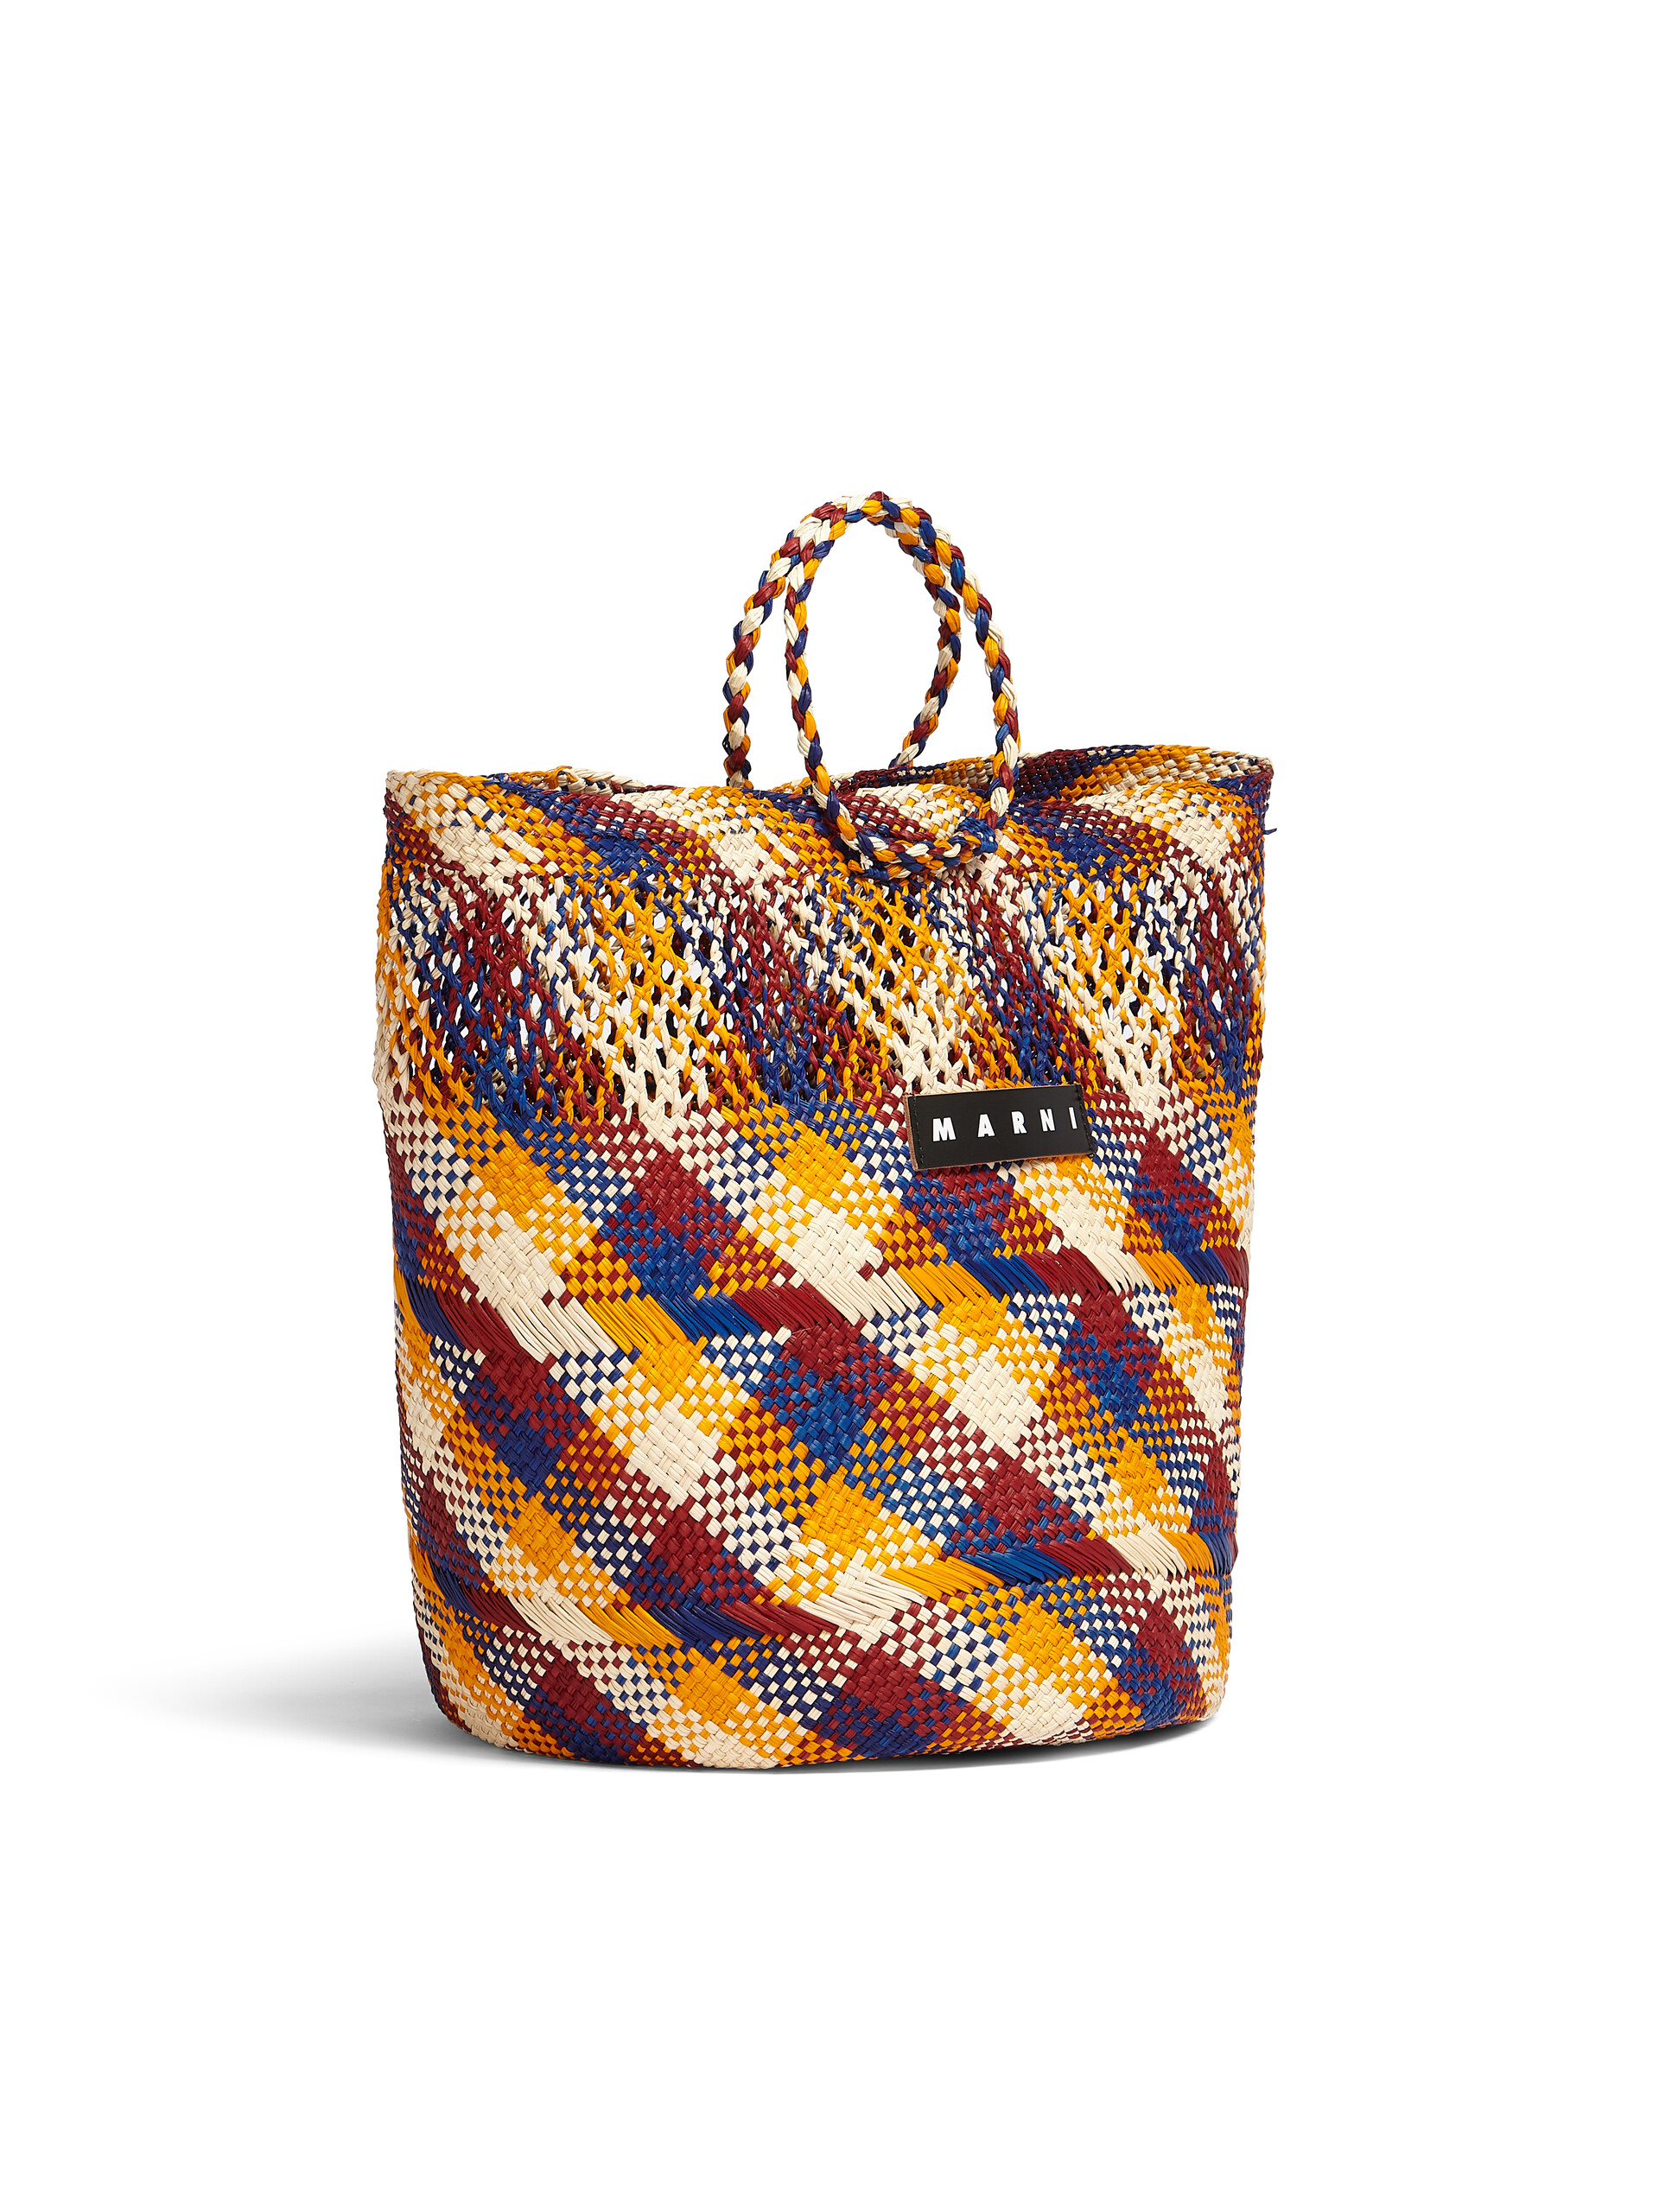 MARNI MARKET TAPIS bag in multicolor natural fiber - Bags - Image 2